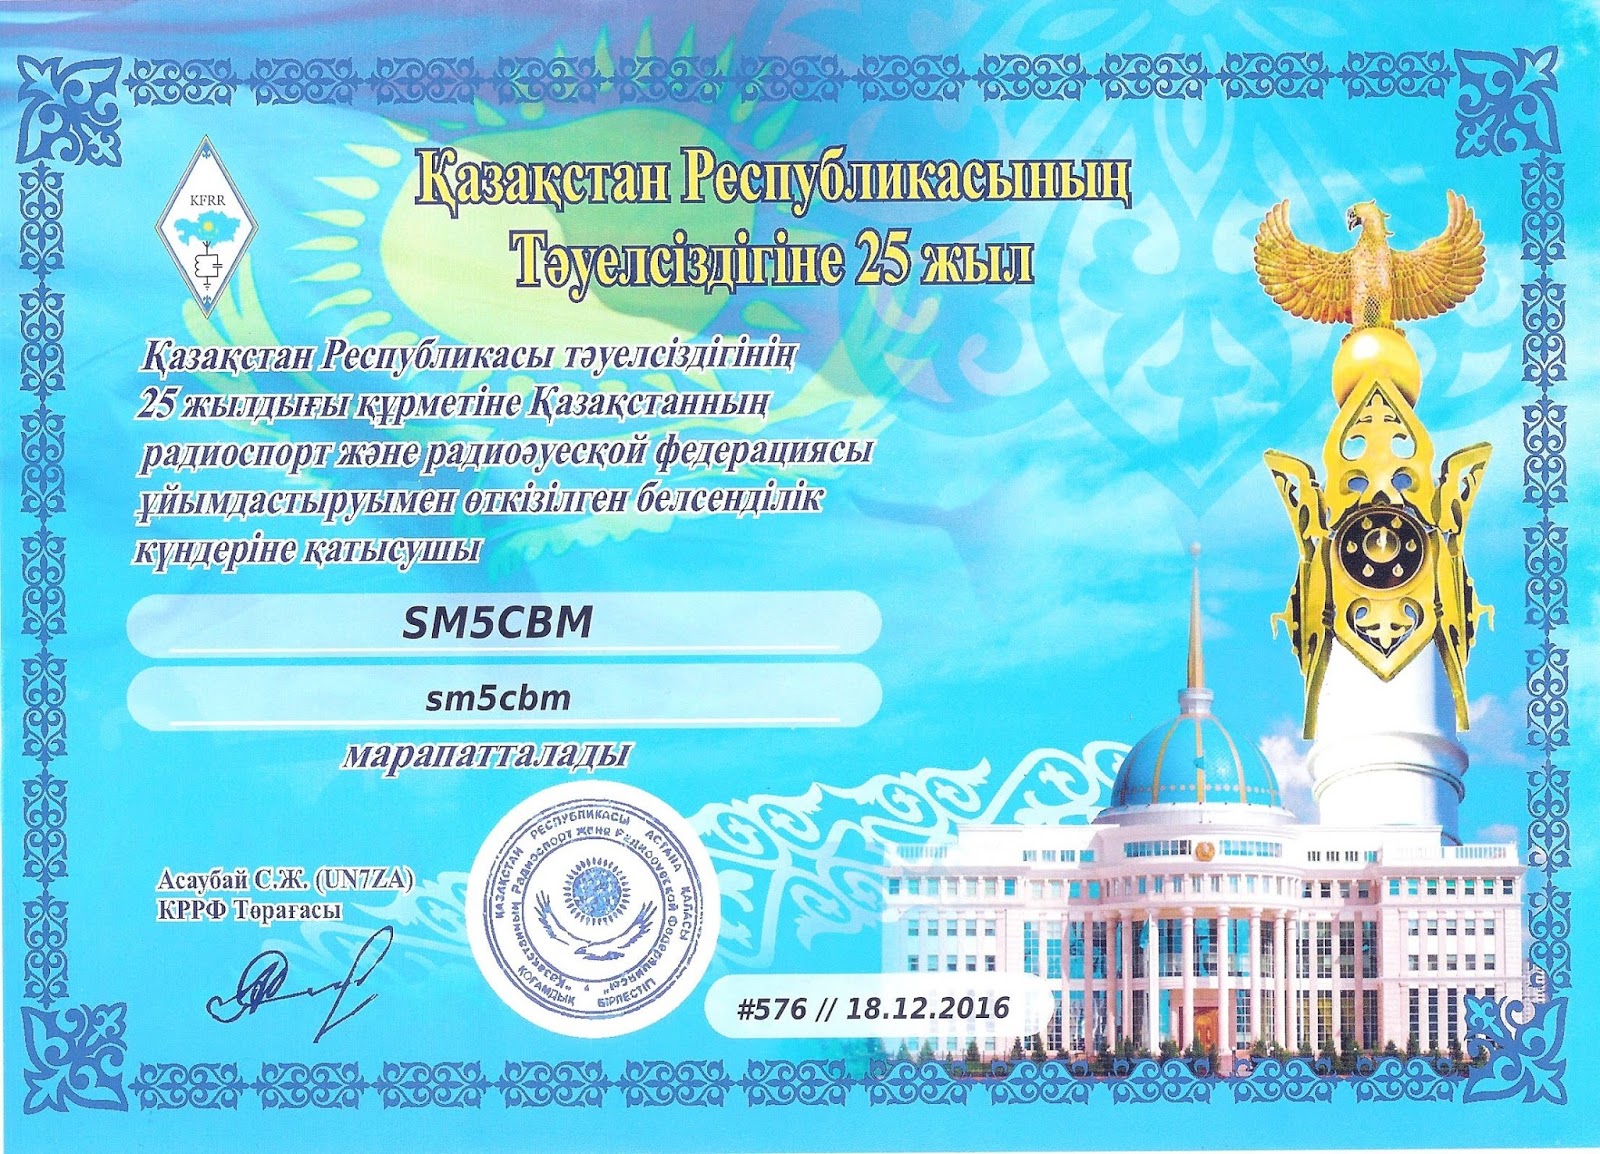 Телефон на казахском языке. Грамота Казахстан. Грамоты на день независимости. Грамоты для независимости РК. Грамота ко Дню независимости РК.